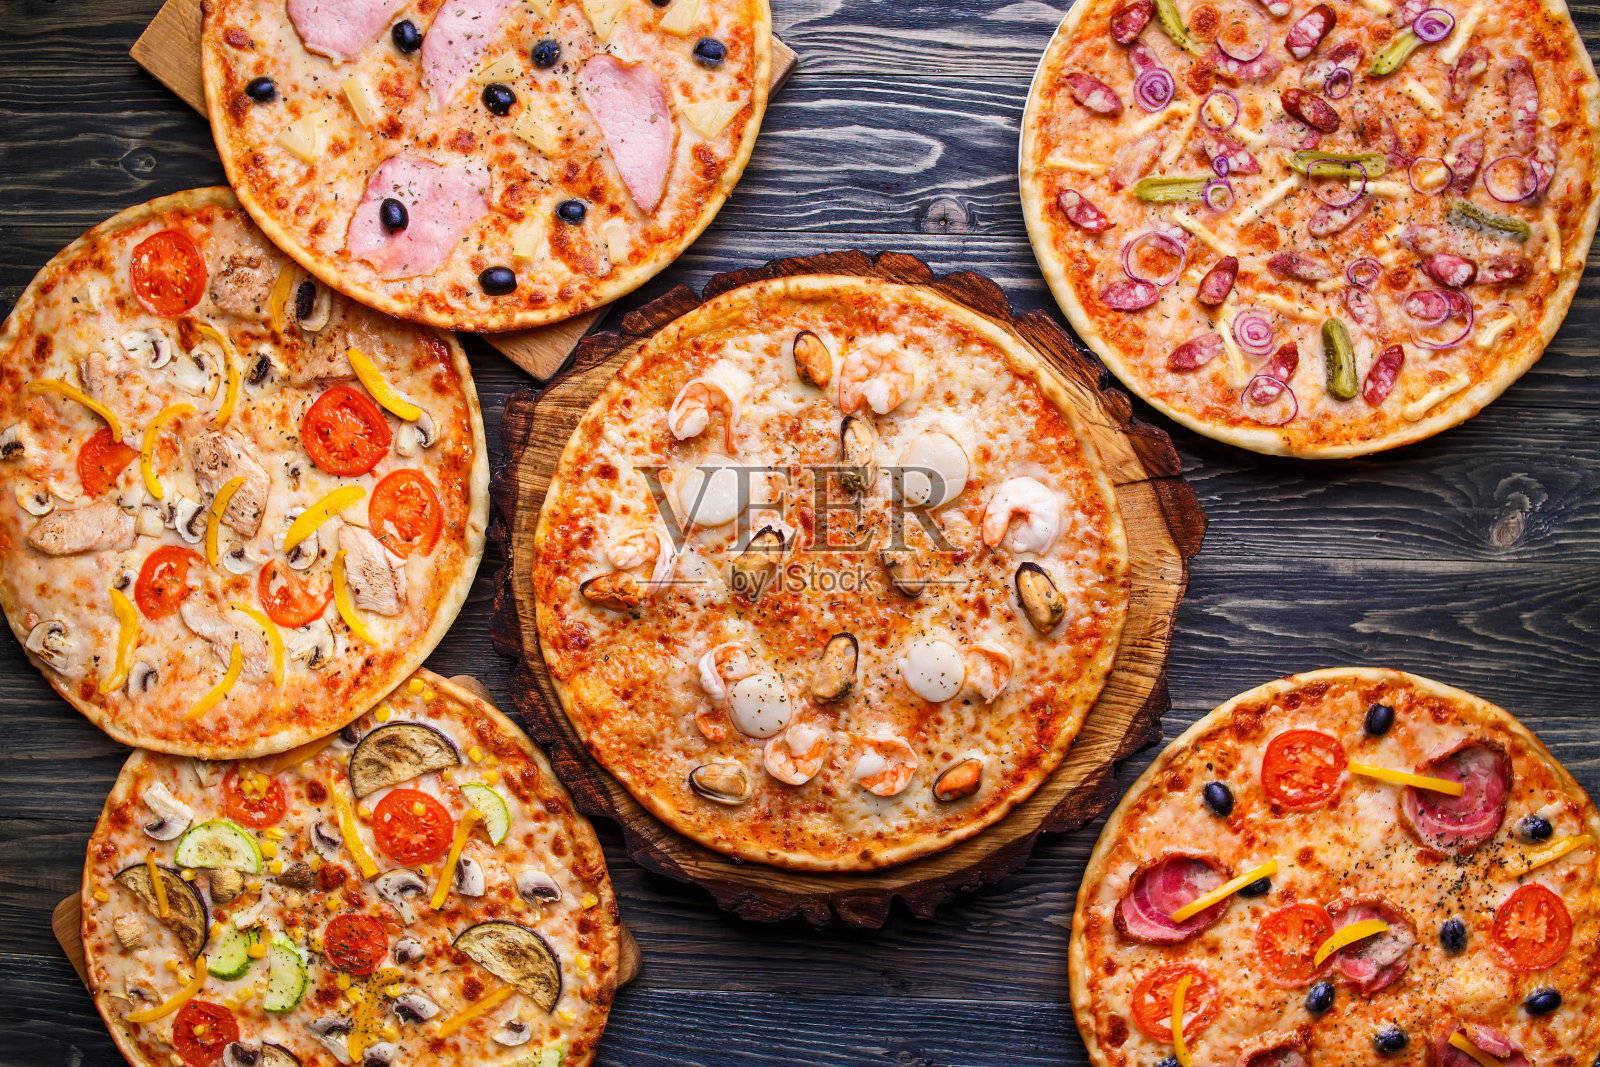 木桌上有六套不同的披萨供菜单使用。意大利佛照片摄影图片